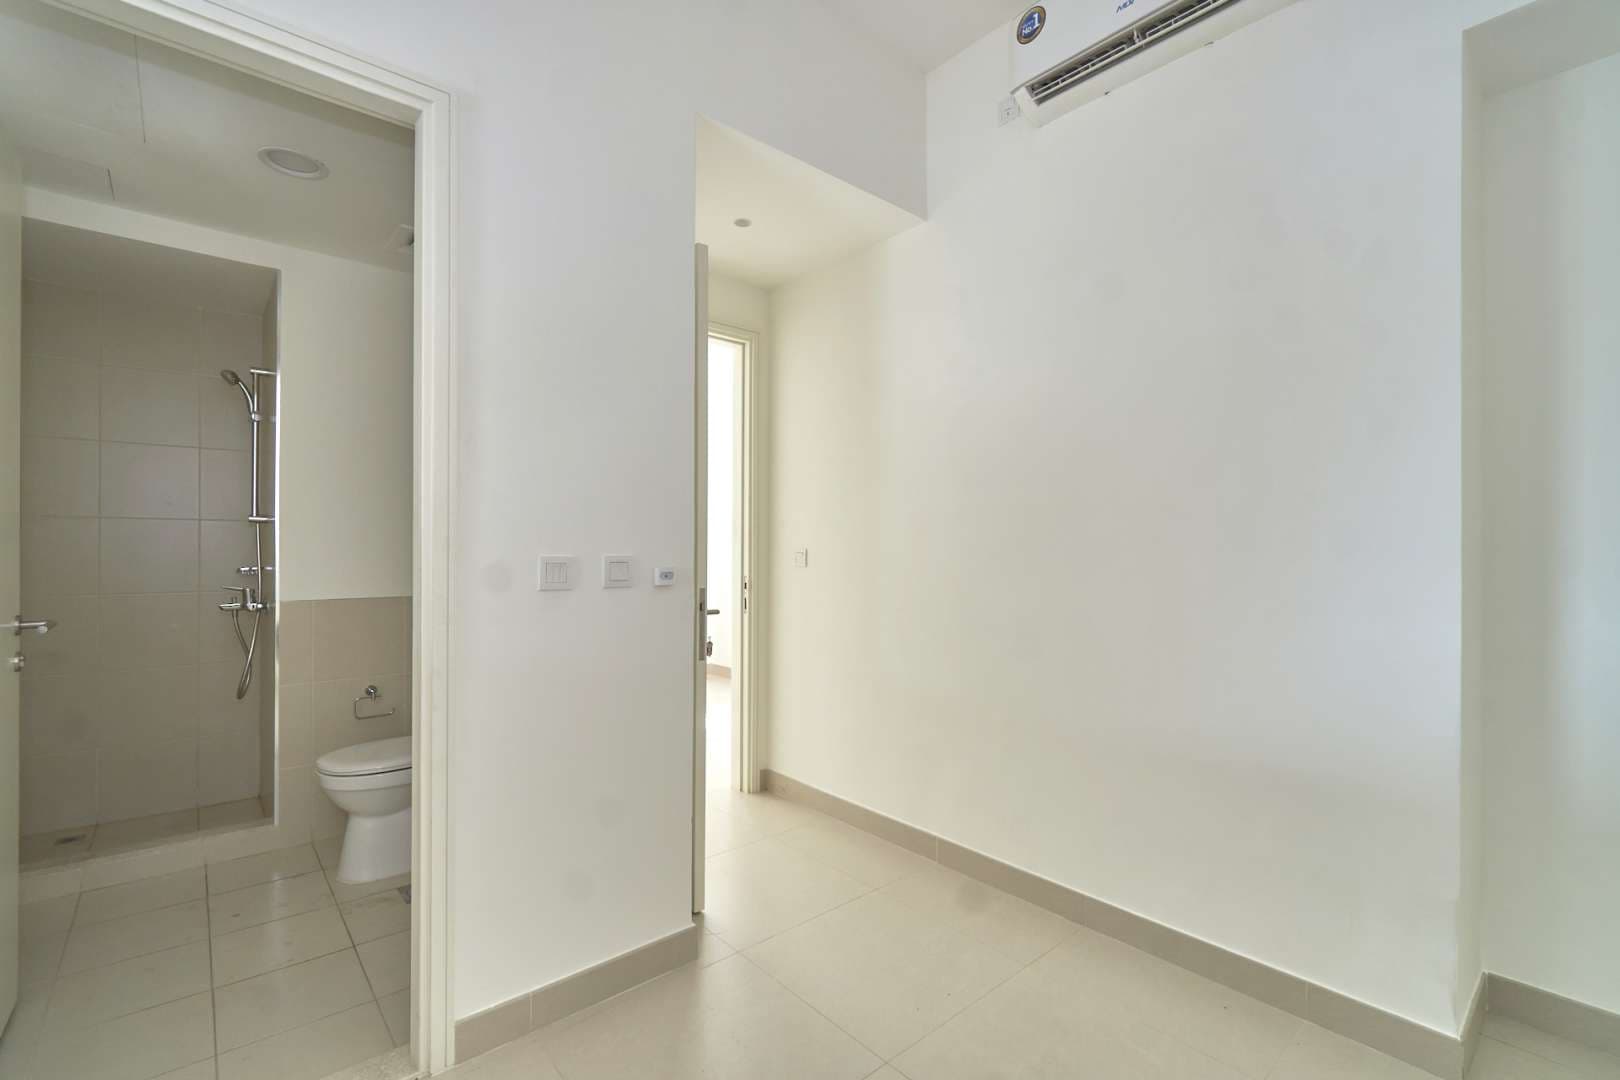 4 Bedroom Villa For Sale Maple At Dubai Hills Estate Lp08364 2c8d68e335e82a00.jpg